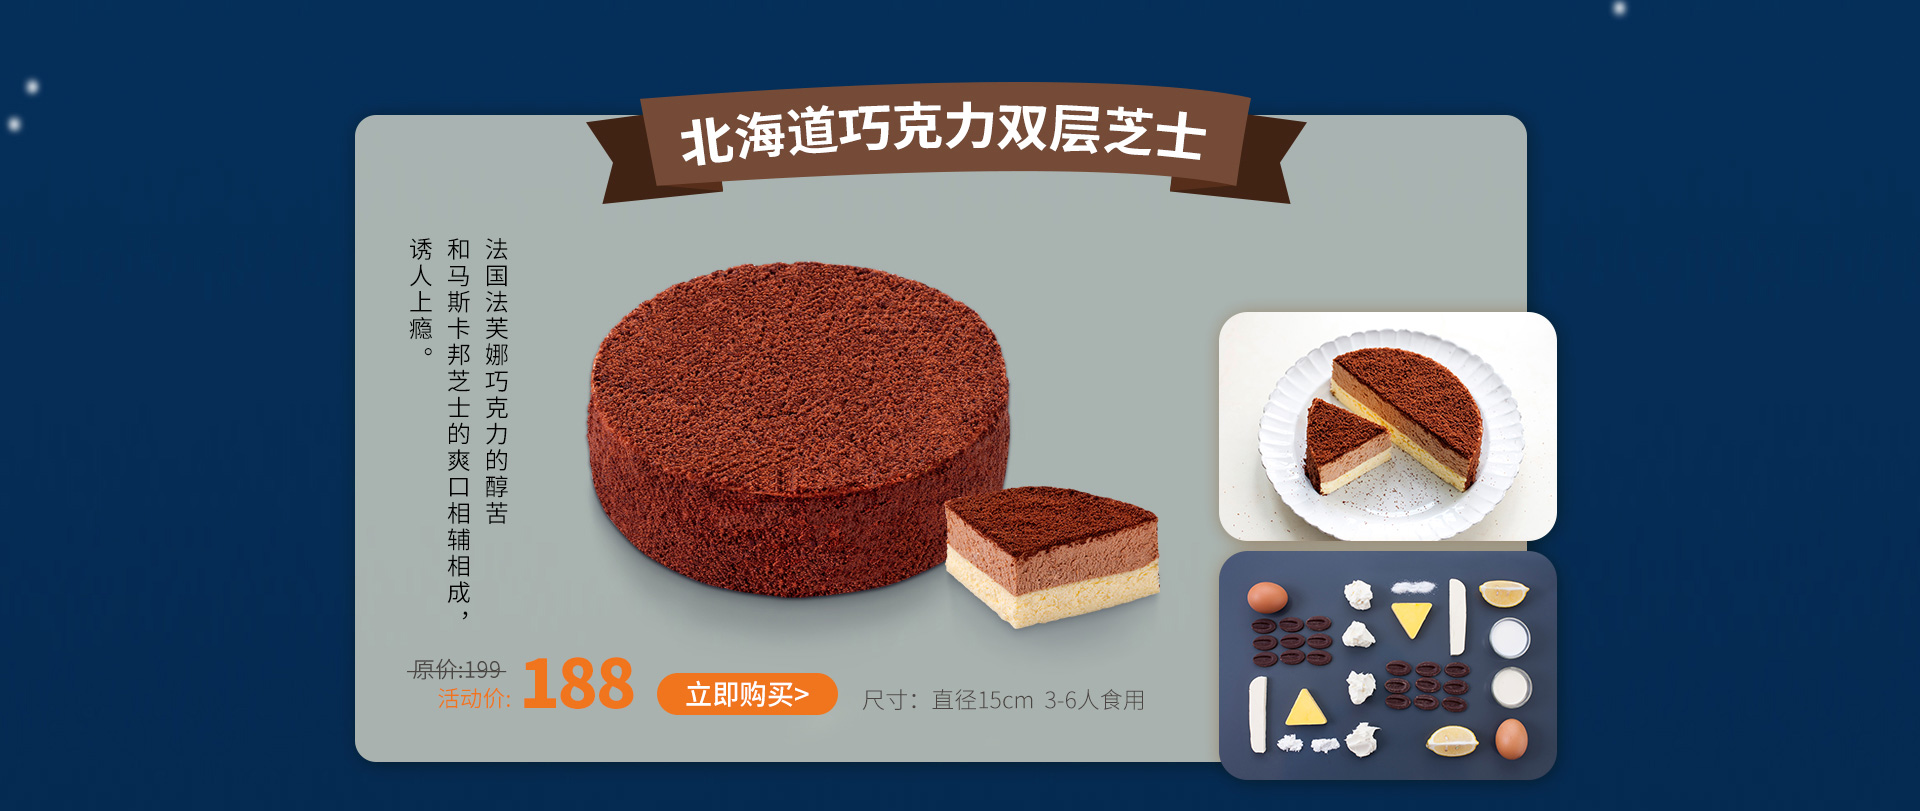 ebeecake小蜜蜂蛋糕 巧克力北海道双层芝士蛋糕